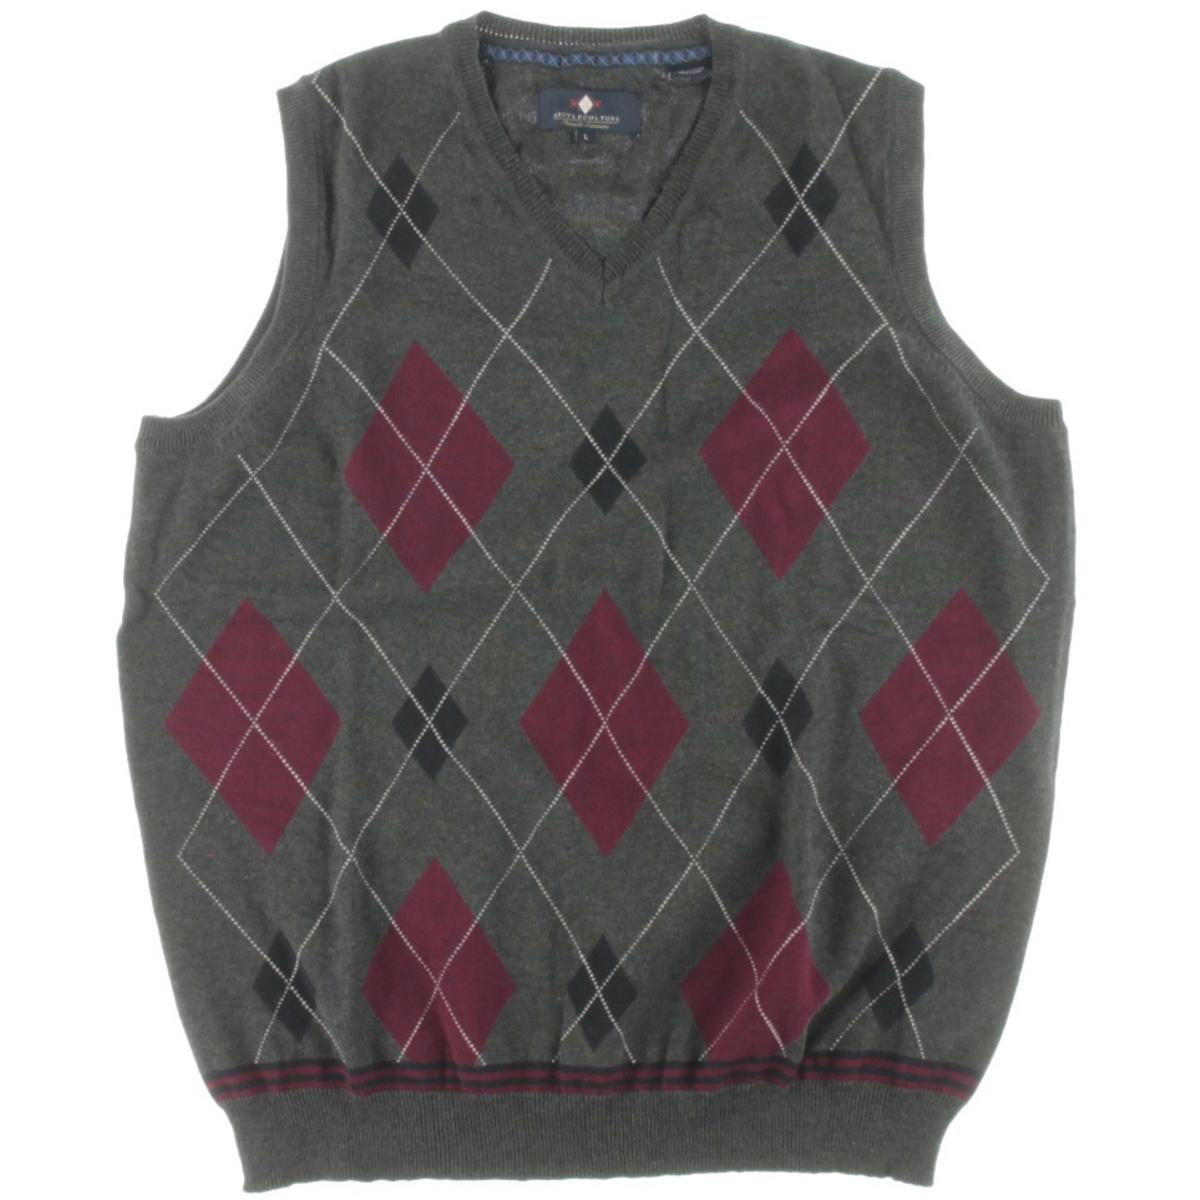 Argyle Culture 0628 Mens Argyle V-Neck Ribbed Trim Sweater Vest BHFO | eBay